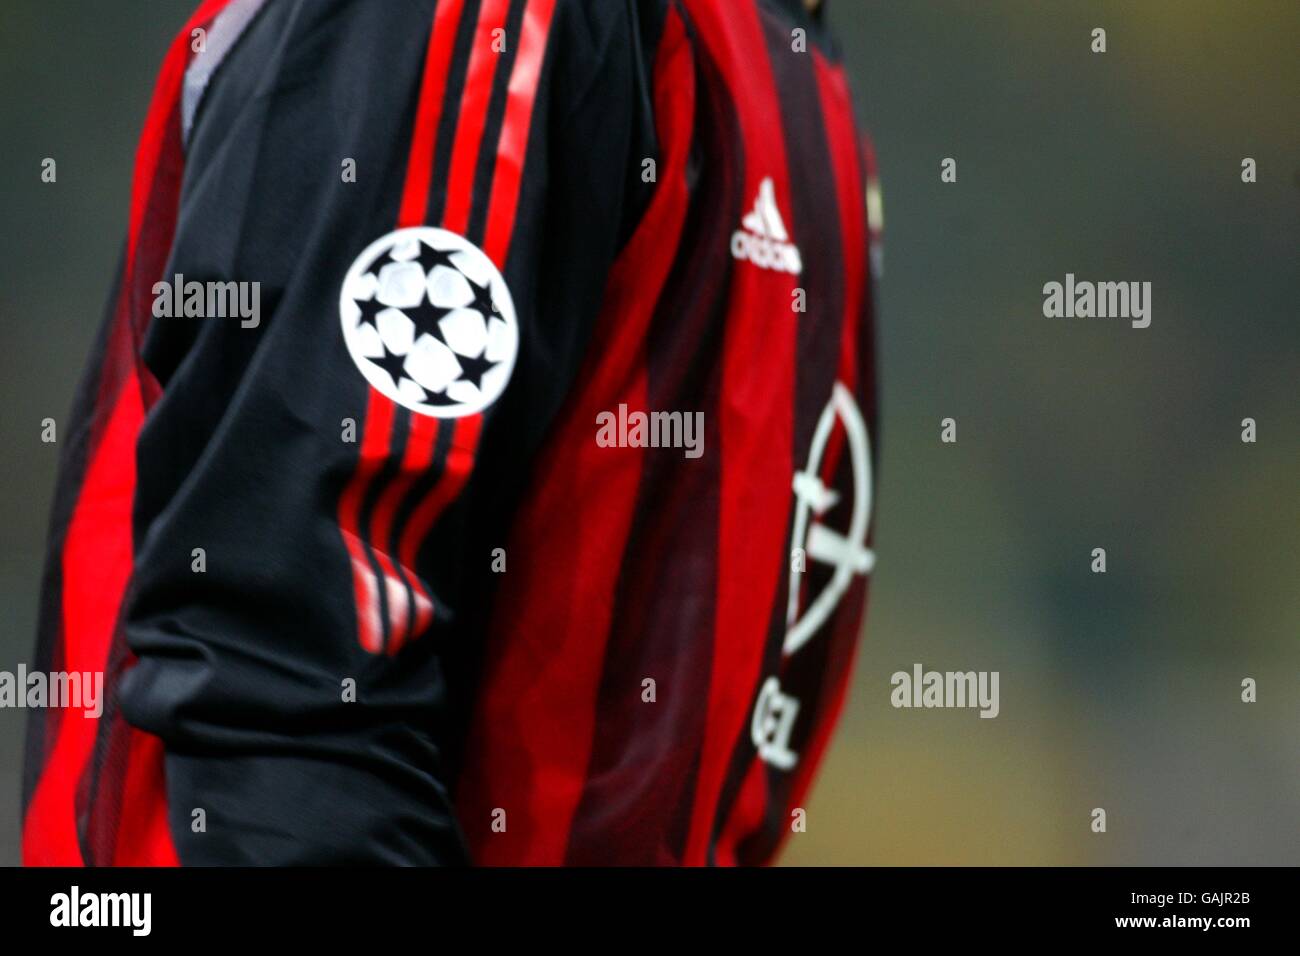 Calcio - UEFA Champions League - Gruppo C - Borussia Dortmund / AC Milan.  Il logo Starball sulla manica della maglia AC Milan Foto stock - Alamy